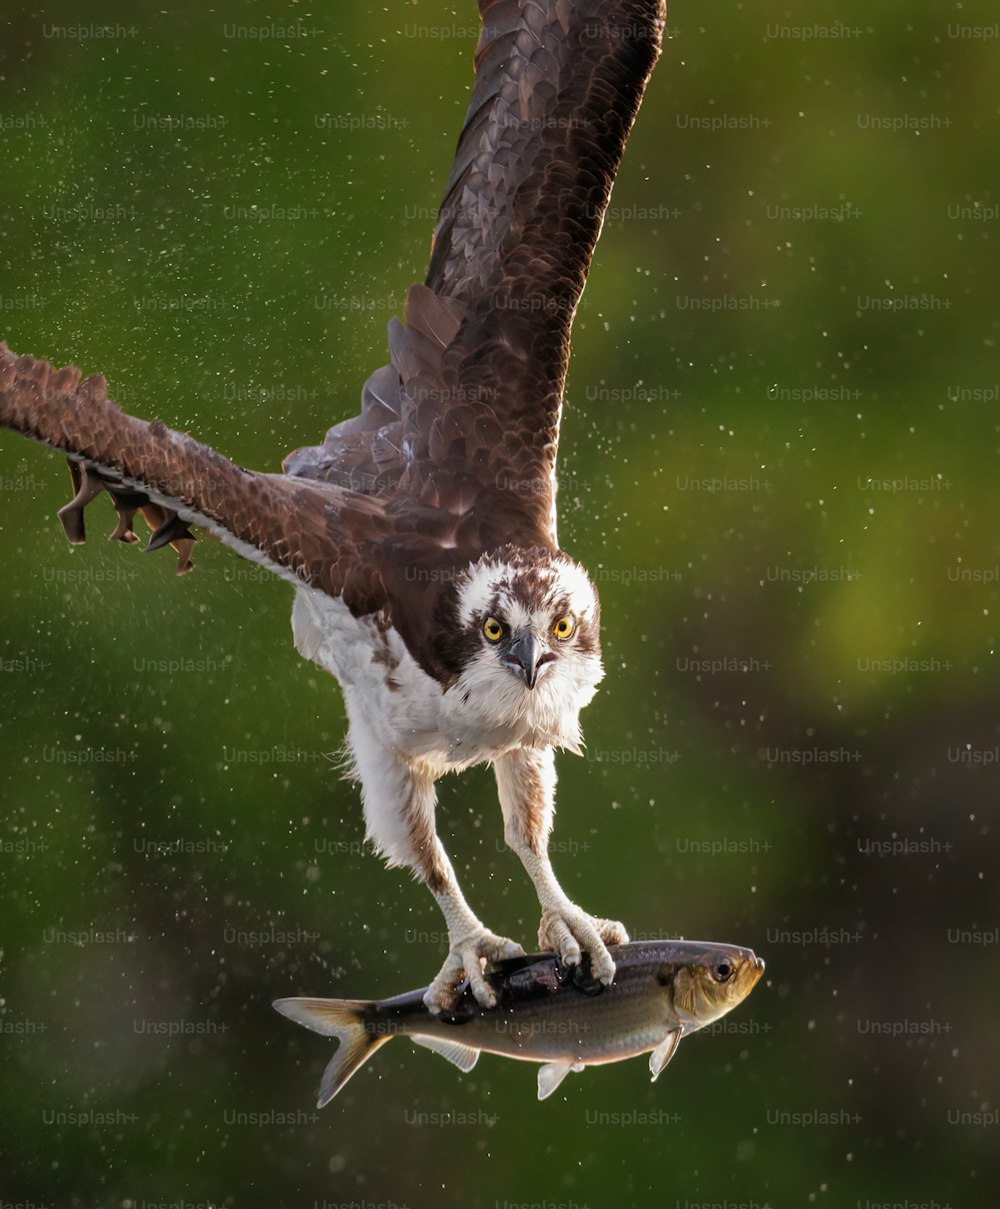 Un águila pescadora en el sur de Florida